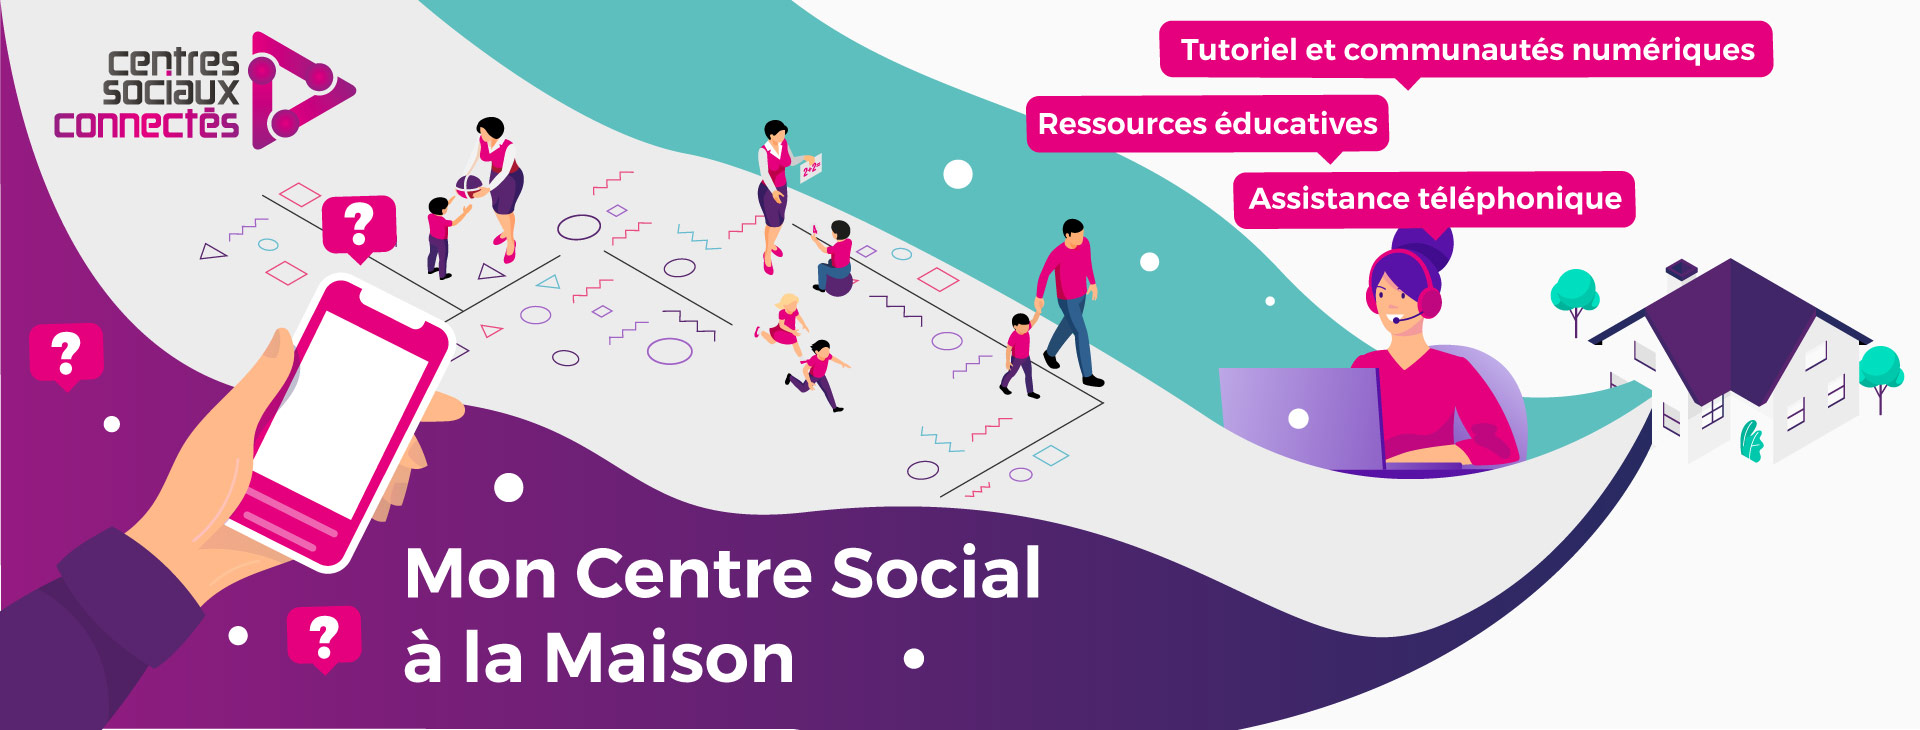 mon_centre_social_connectes_a_la_maison_centres_sociaux